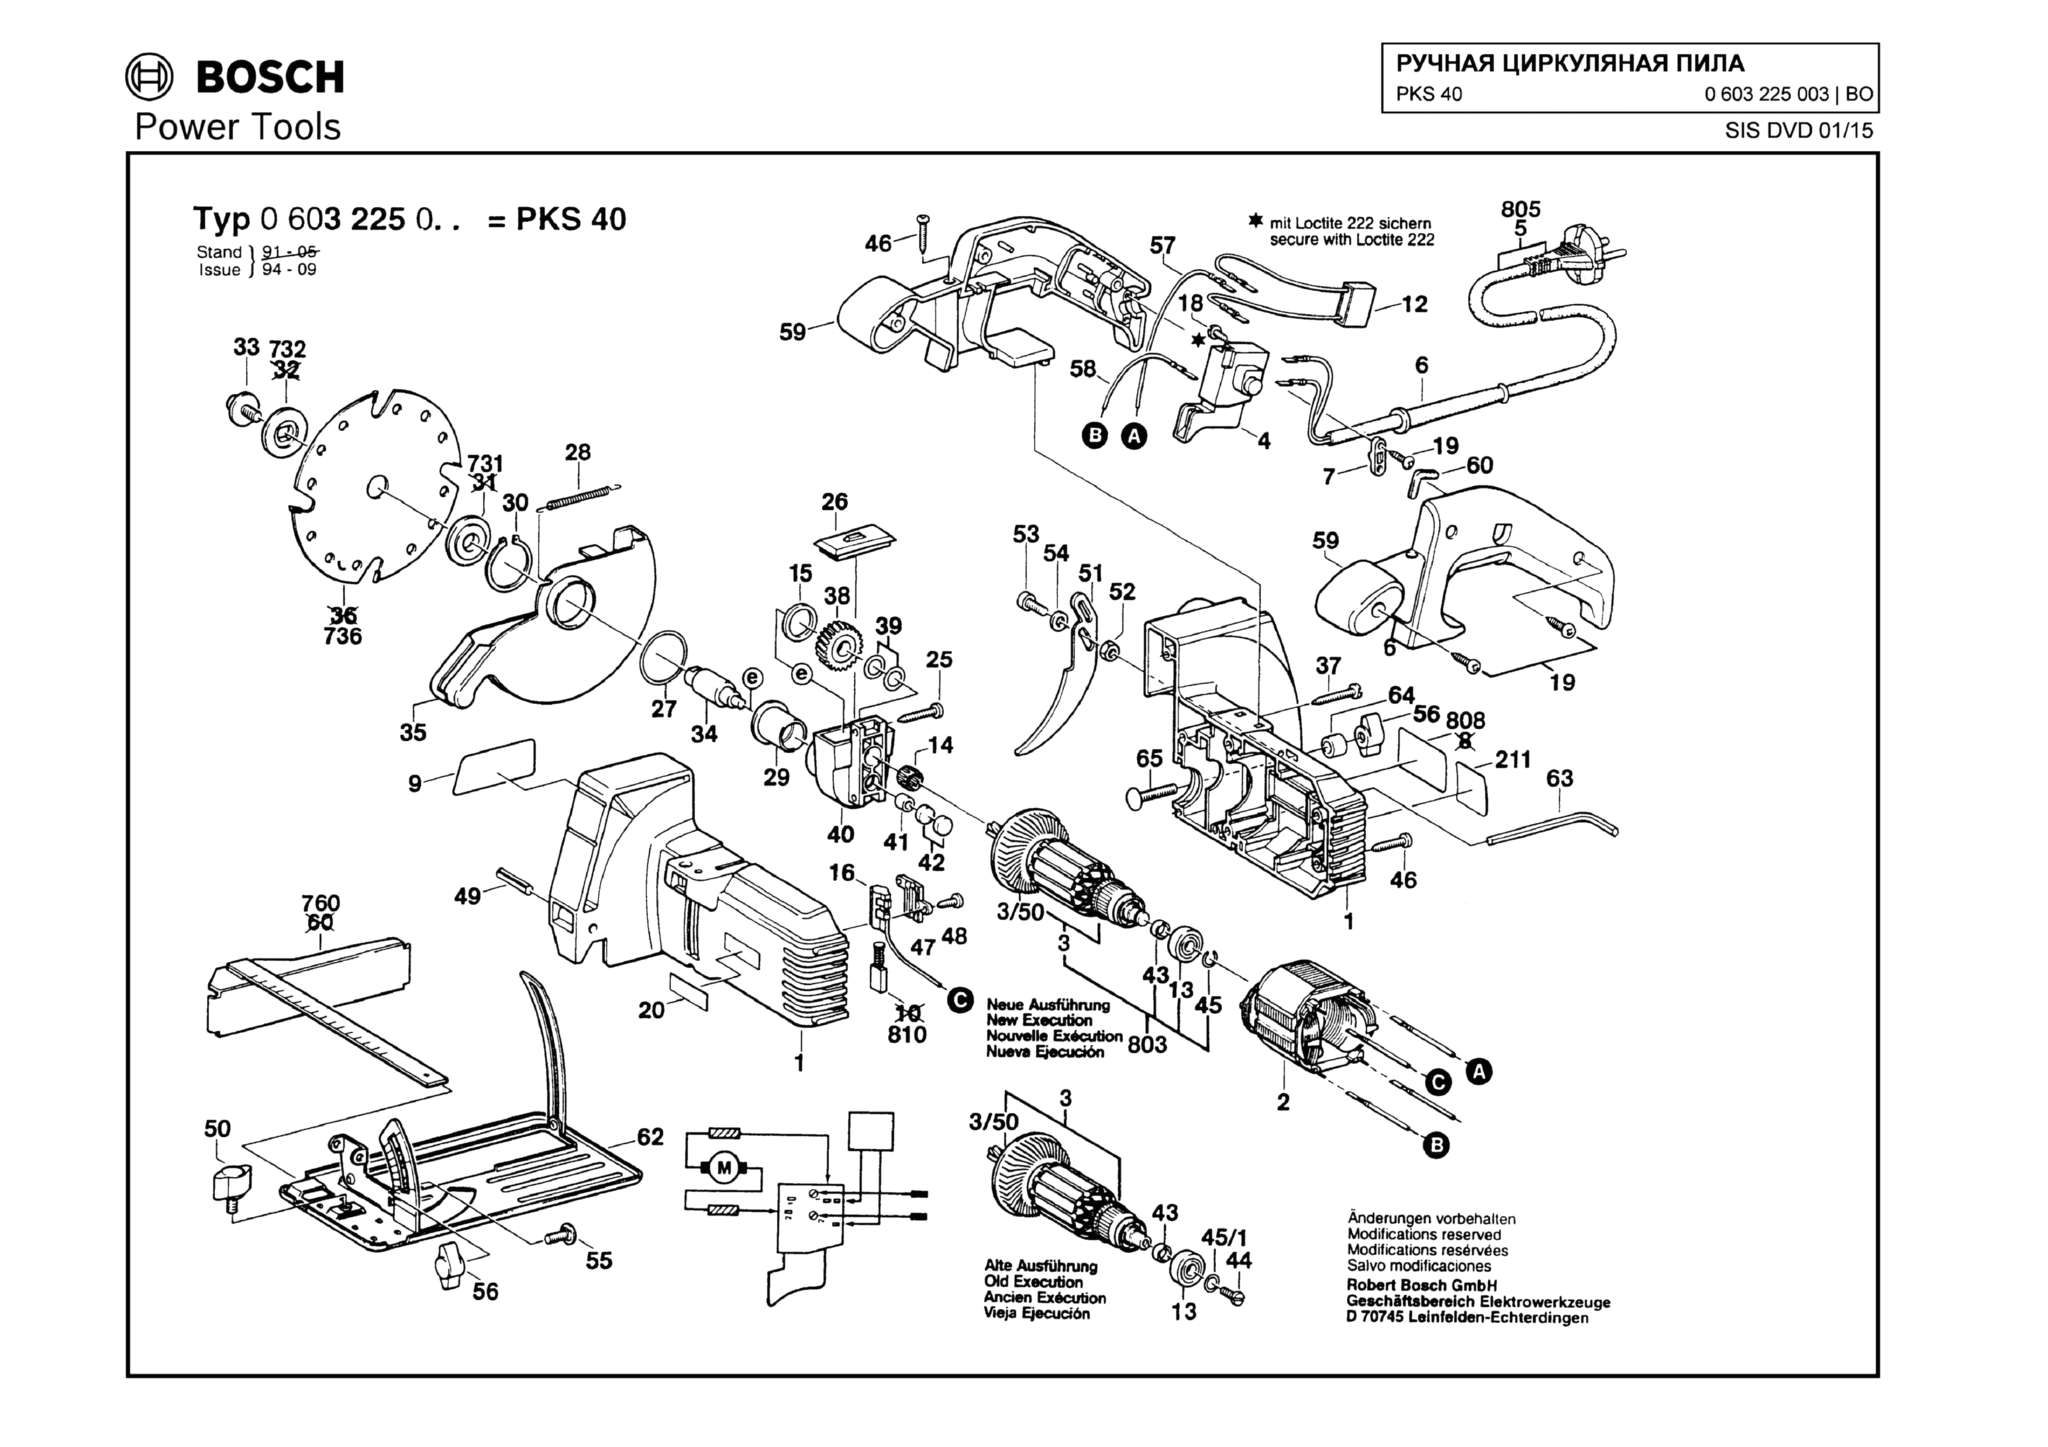 Запчасти, схема и деталировка Bosch PKS 40 (ТИП 0603225003)